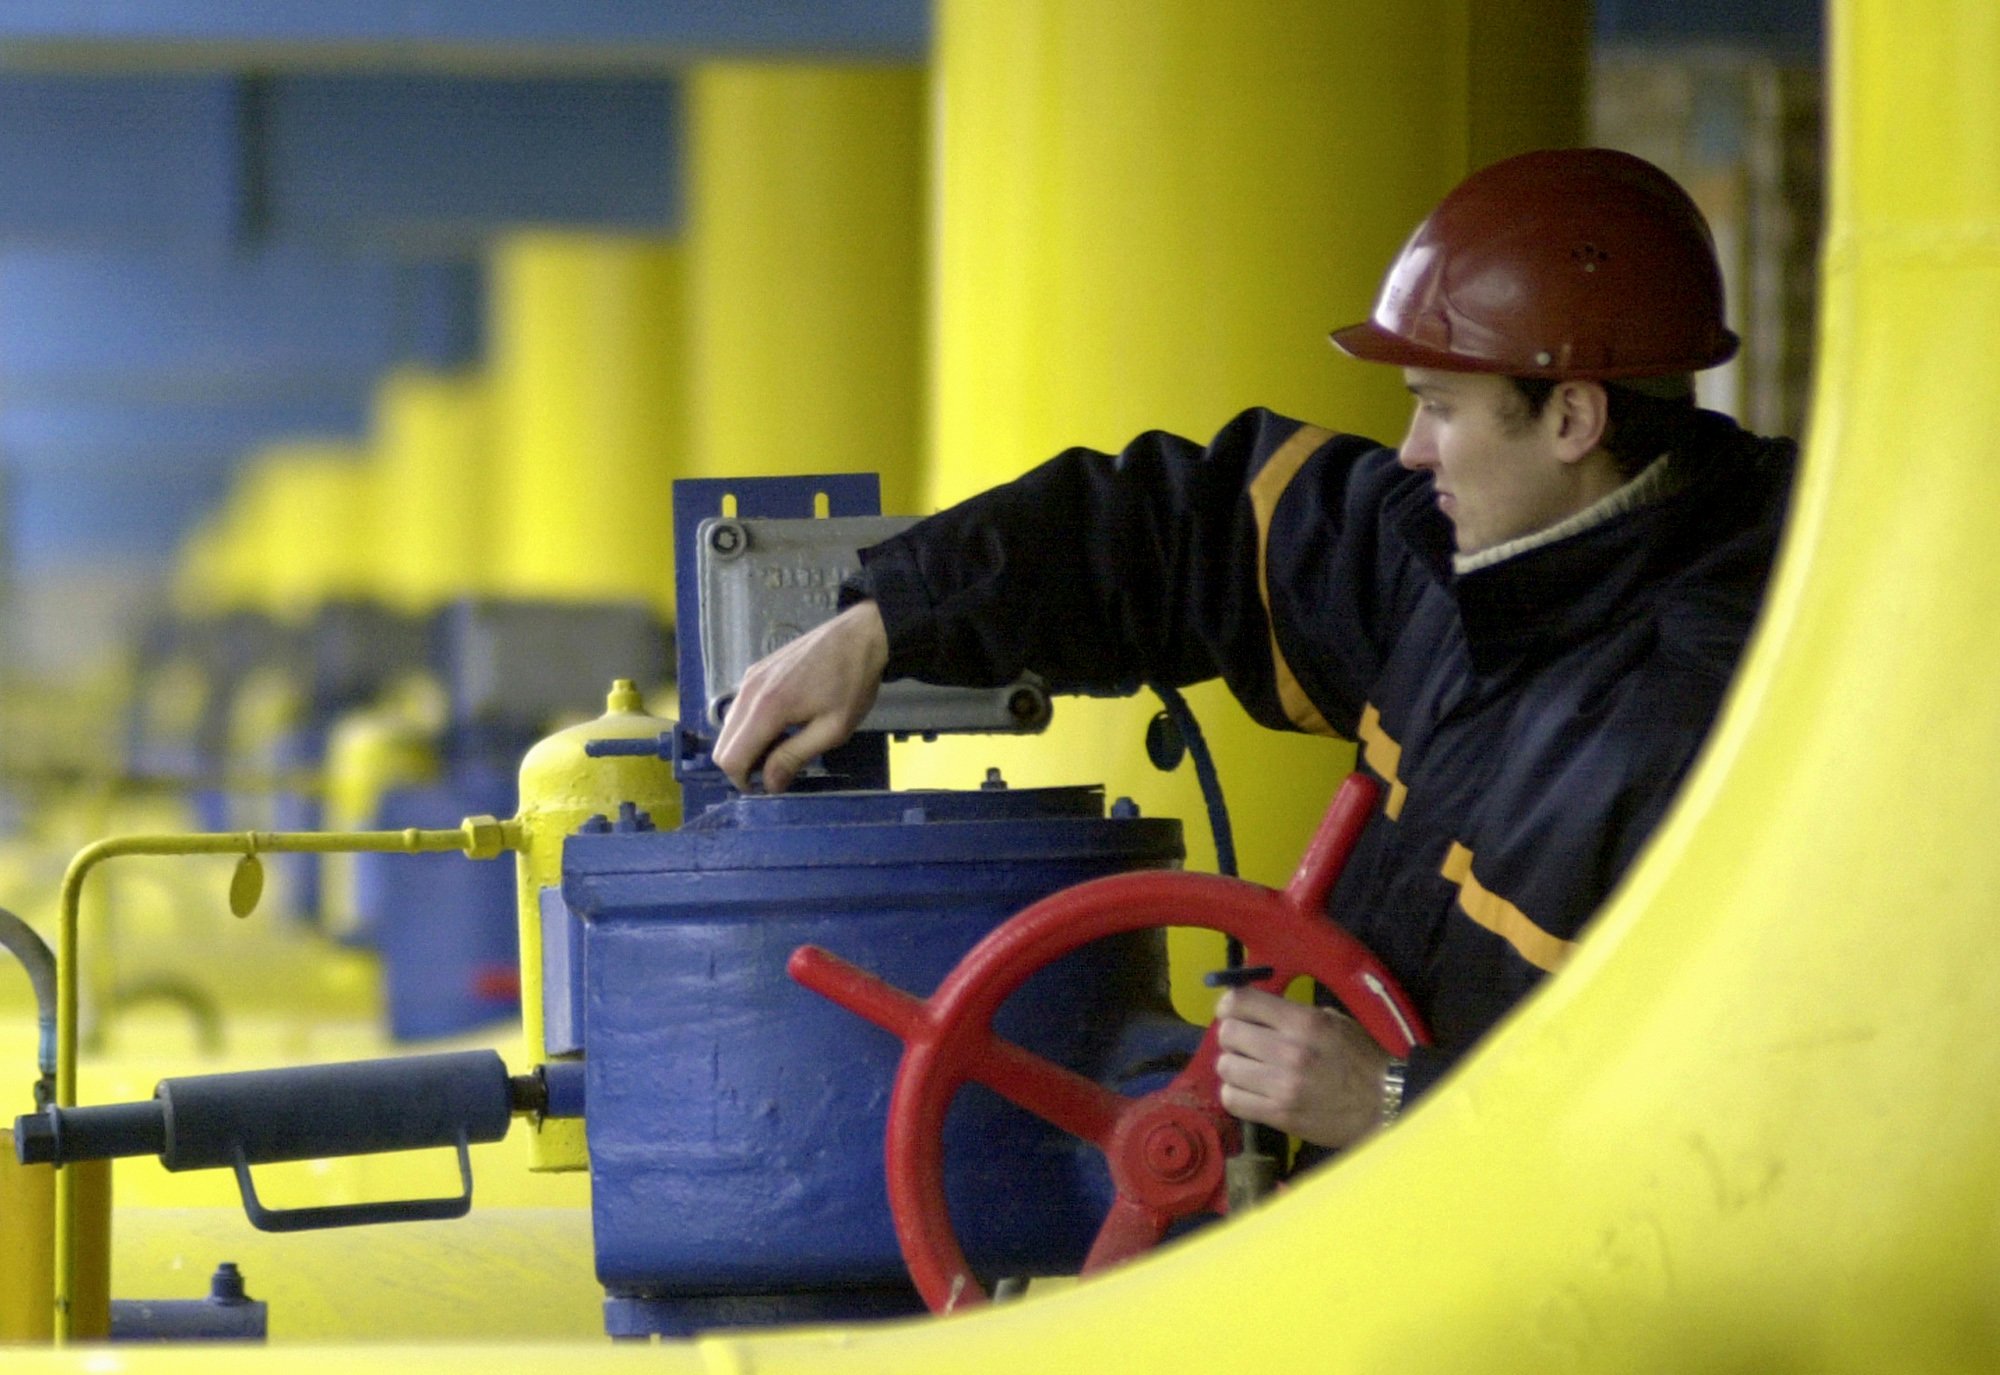 З травня Україна втричі збільшила імпорт газу зі Словаччини